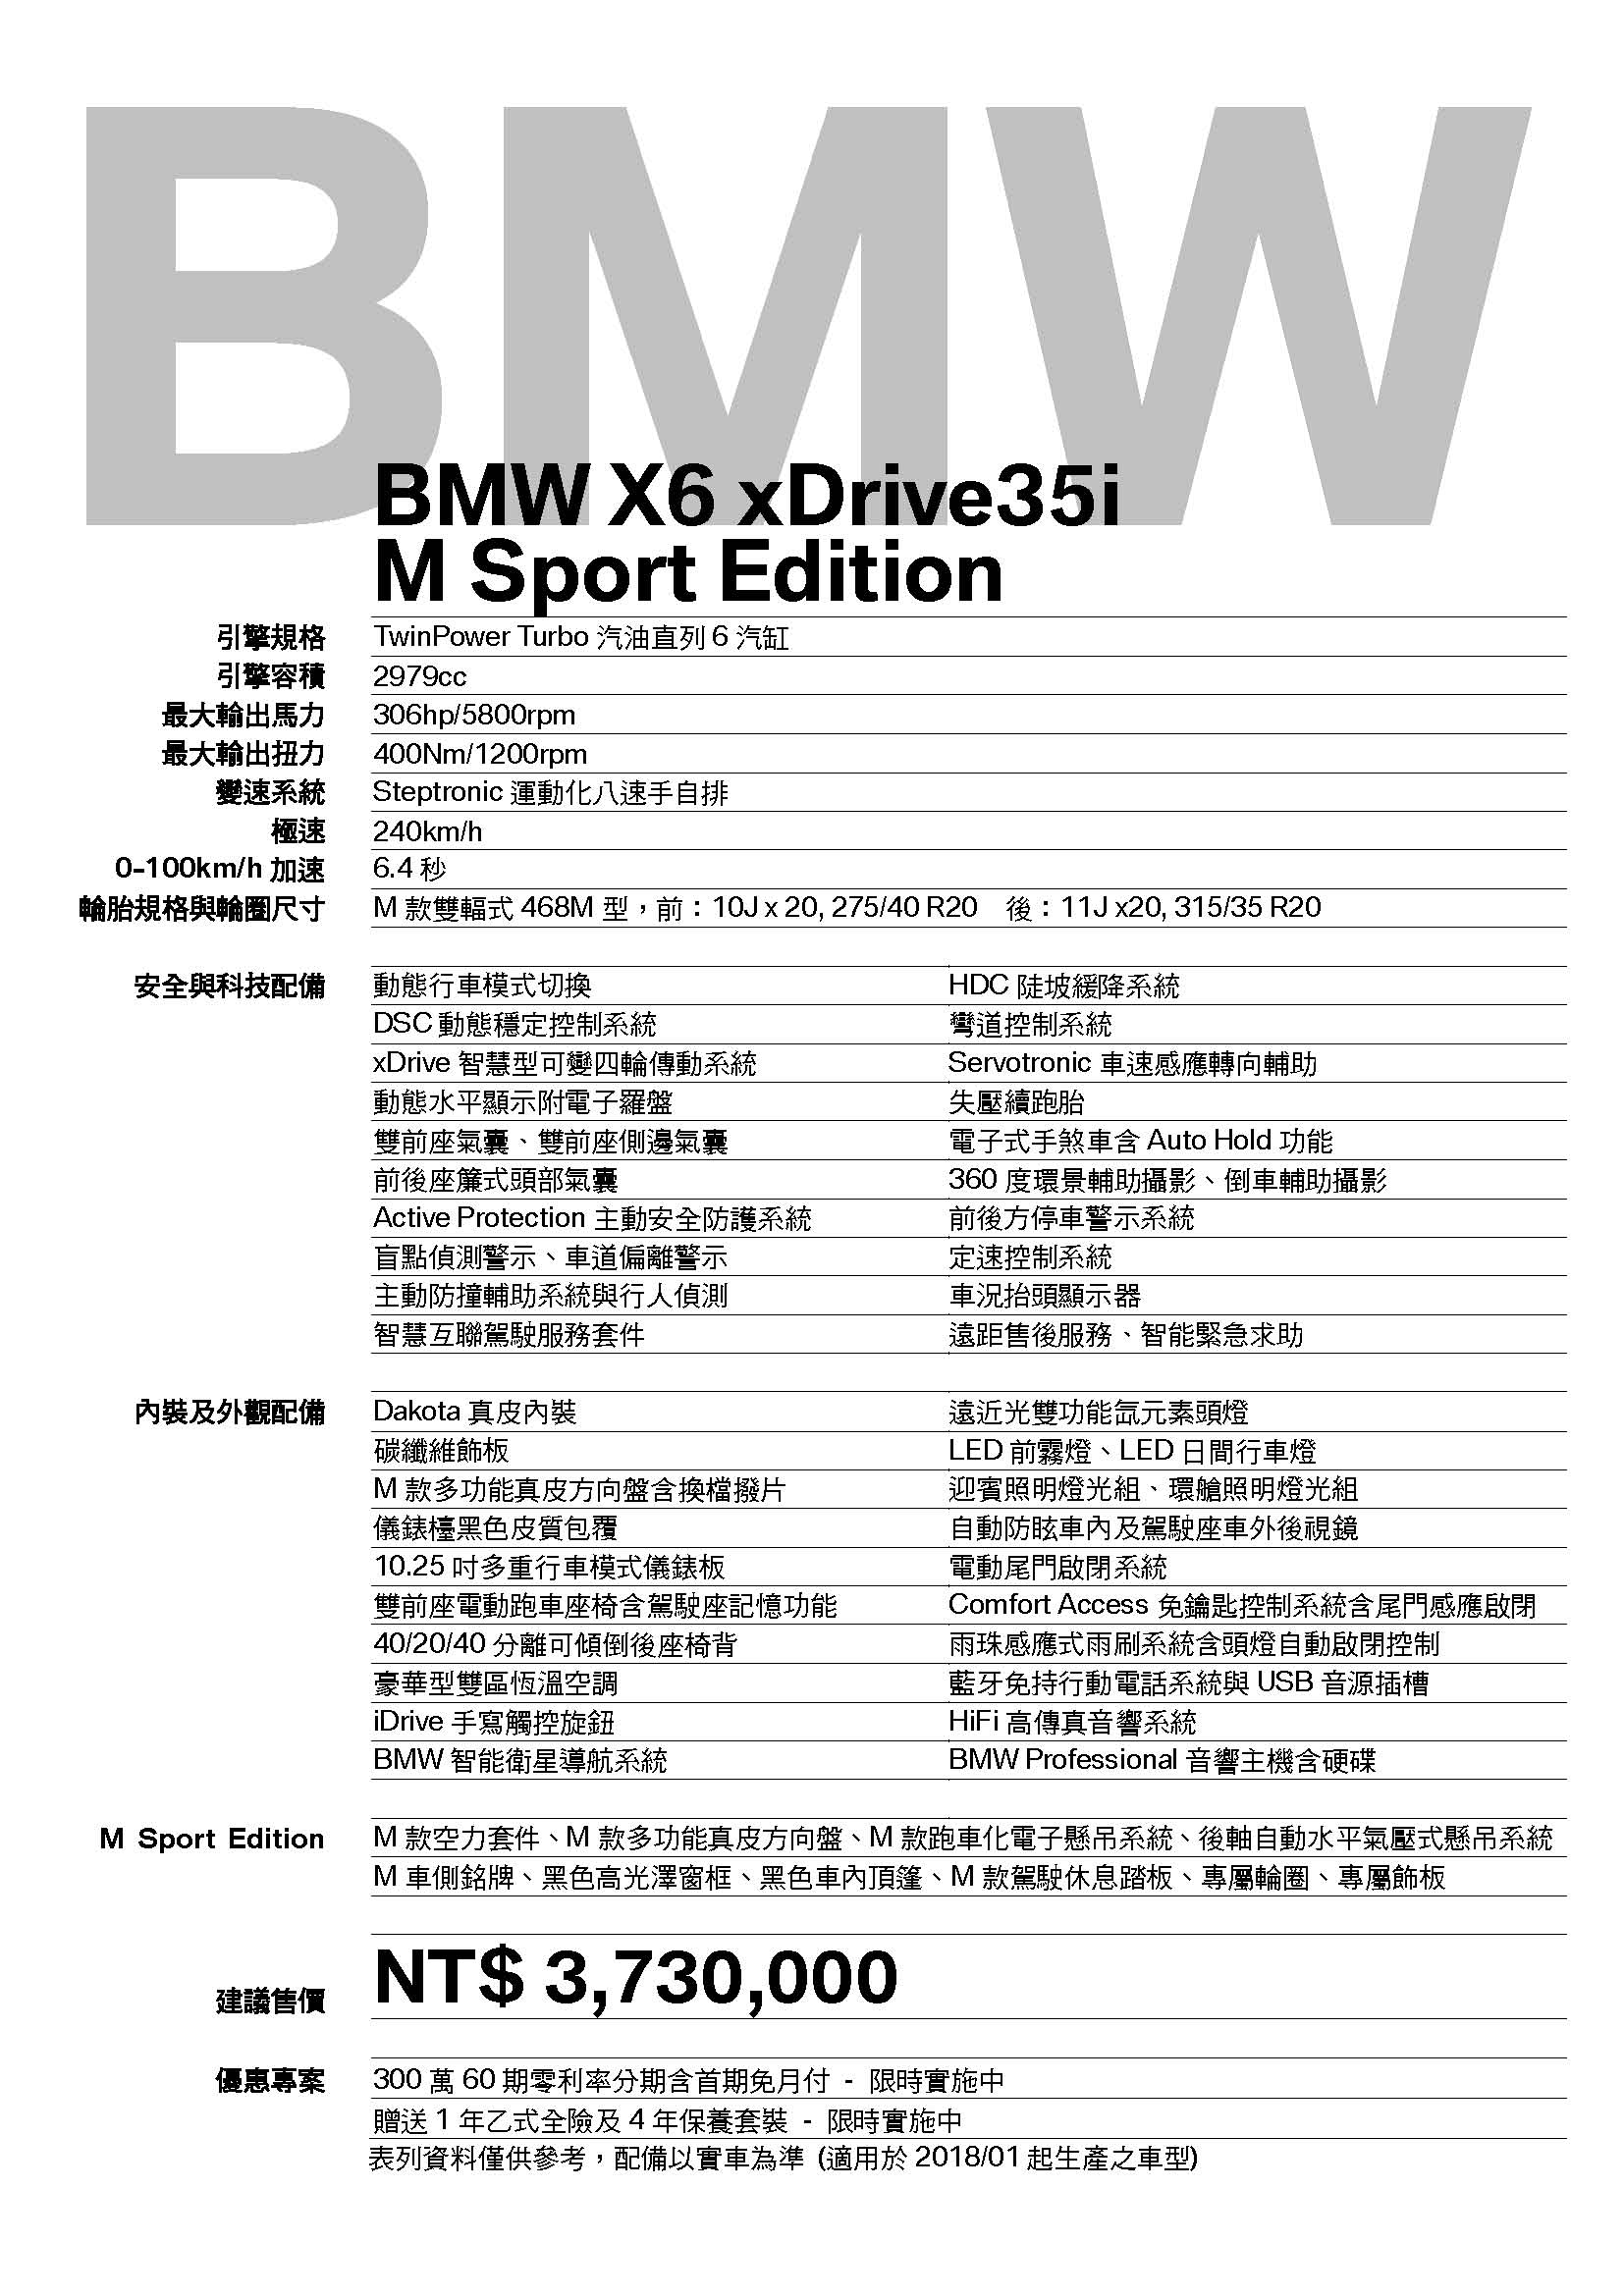 全新BMW X6 xDrive35i M Sport Edition (F16)媒體試乘車規格配備表